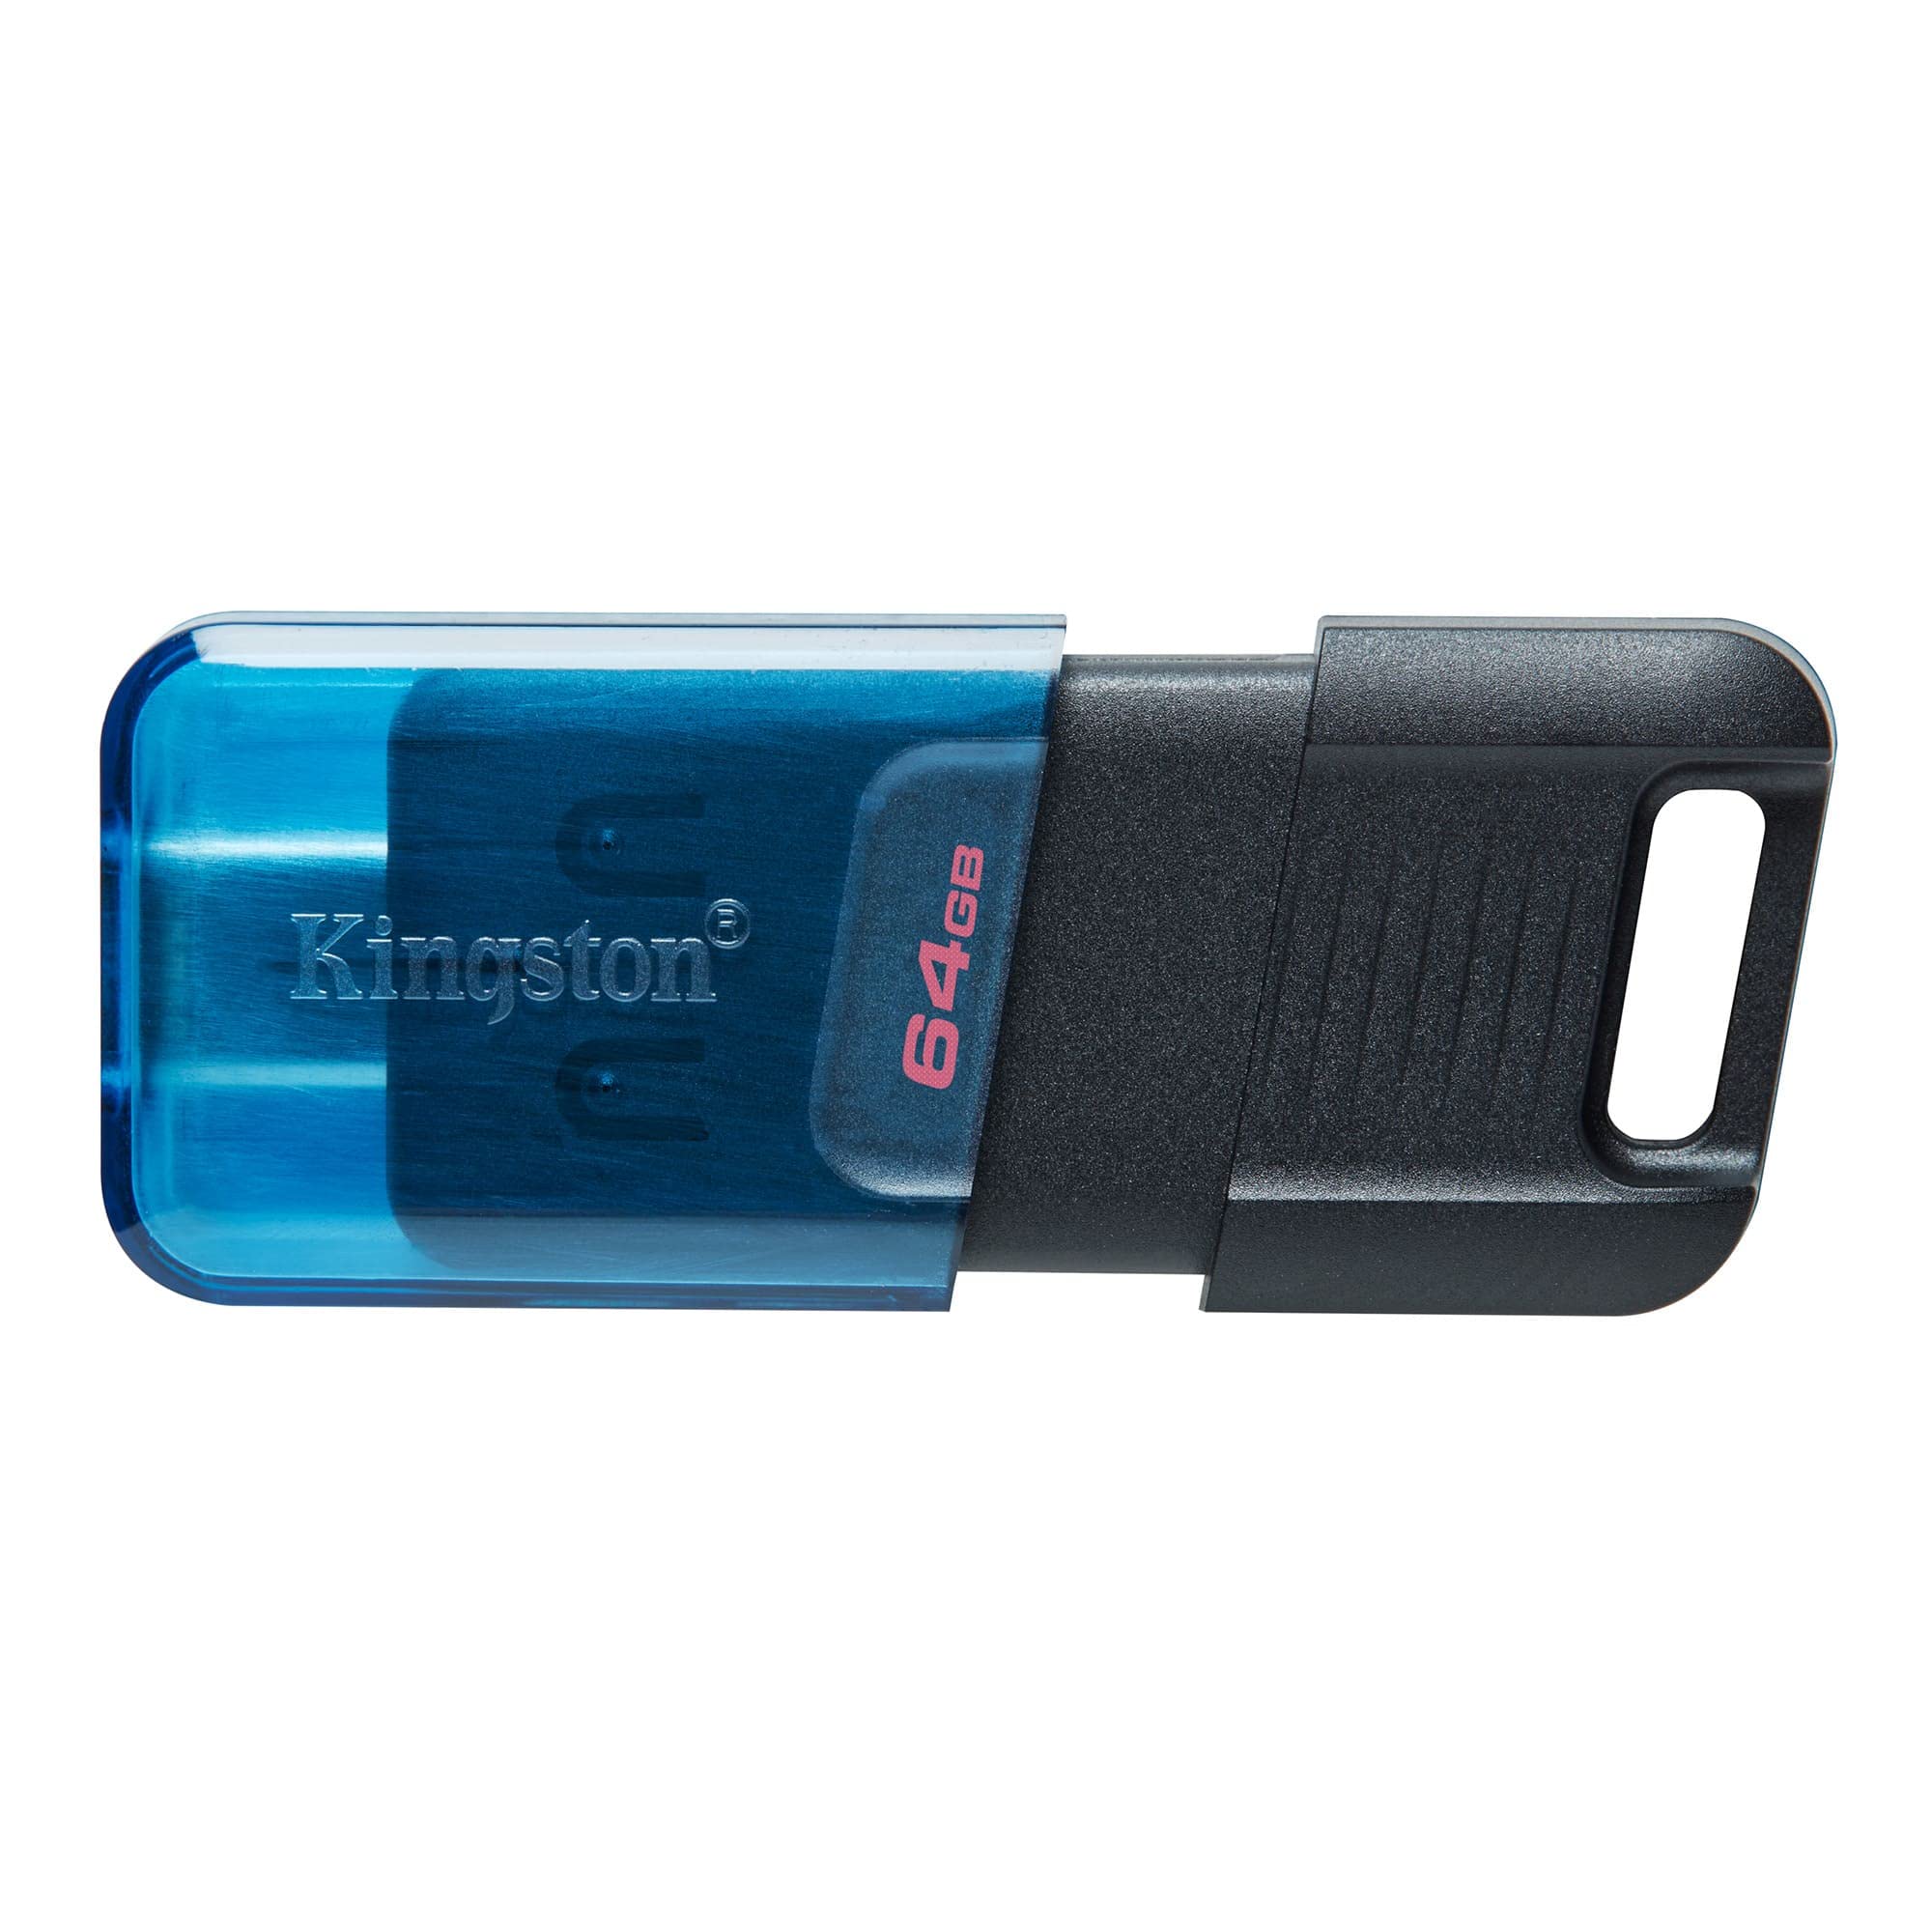 キングストンテクノロジー Kingston USBメモリ Type-C 64GB USB3.2gen1/3.0 最大転送速度 200MB/s Data